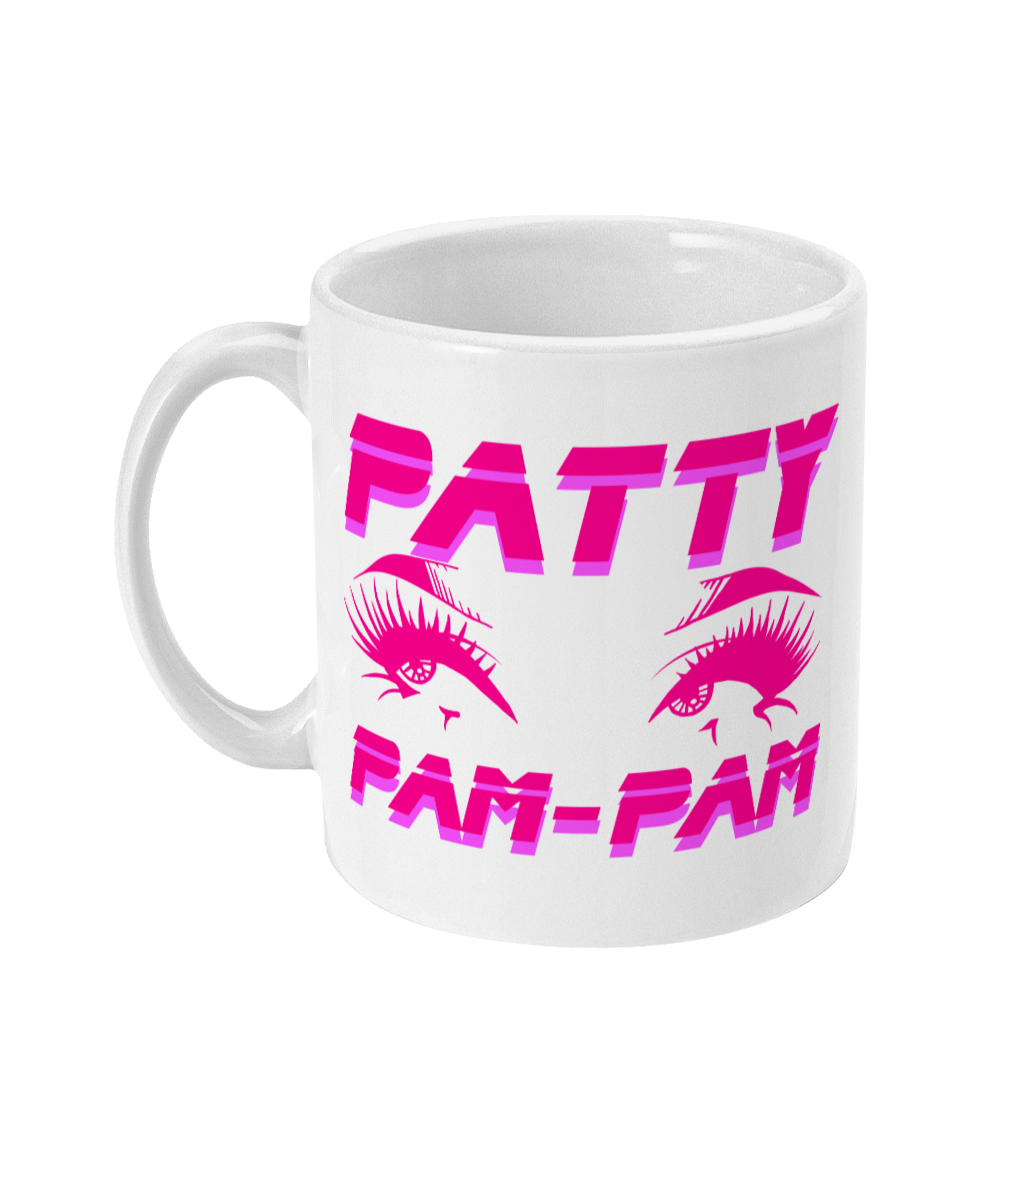 Patty Pam-Pam - Eyes Mug